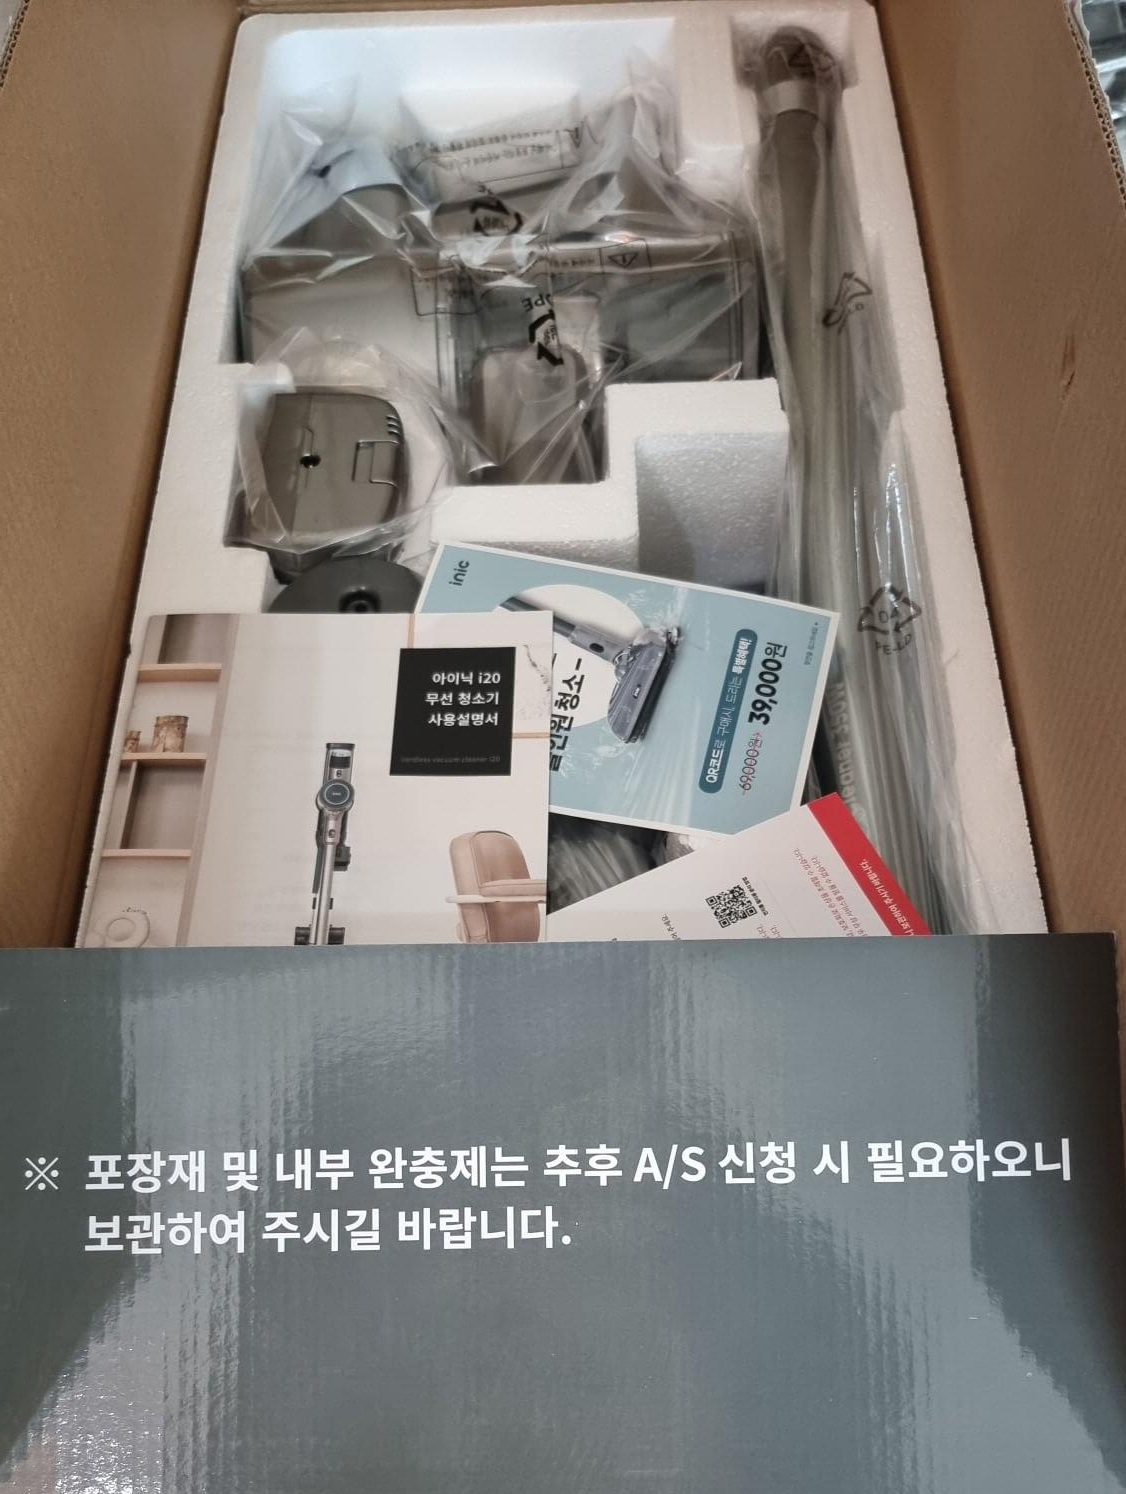 아이닉 NEW i20 박스 개봉한 모습